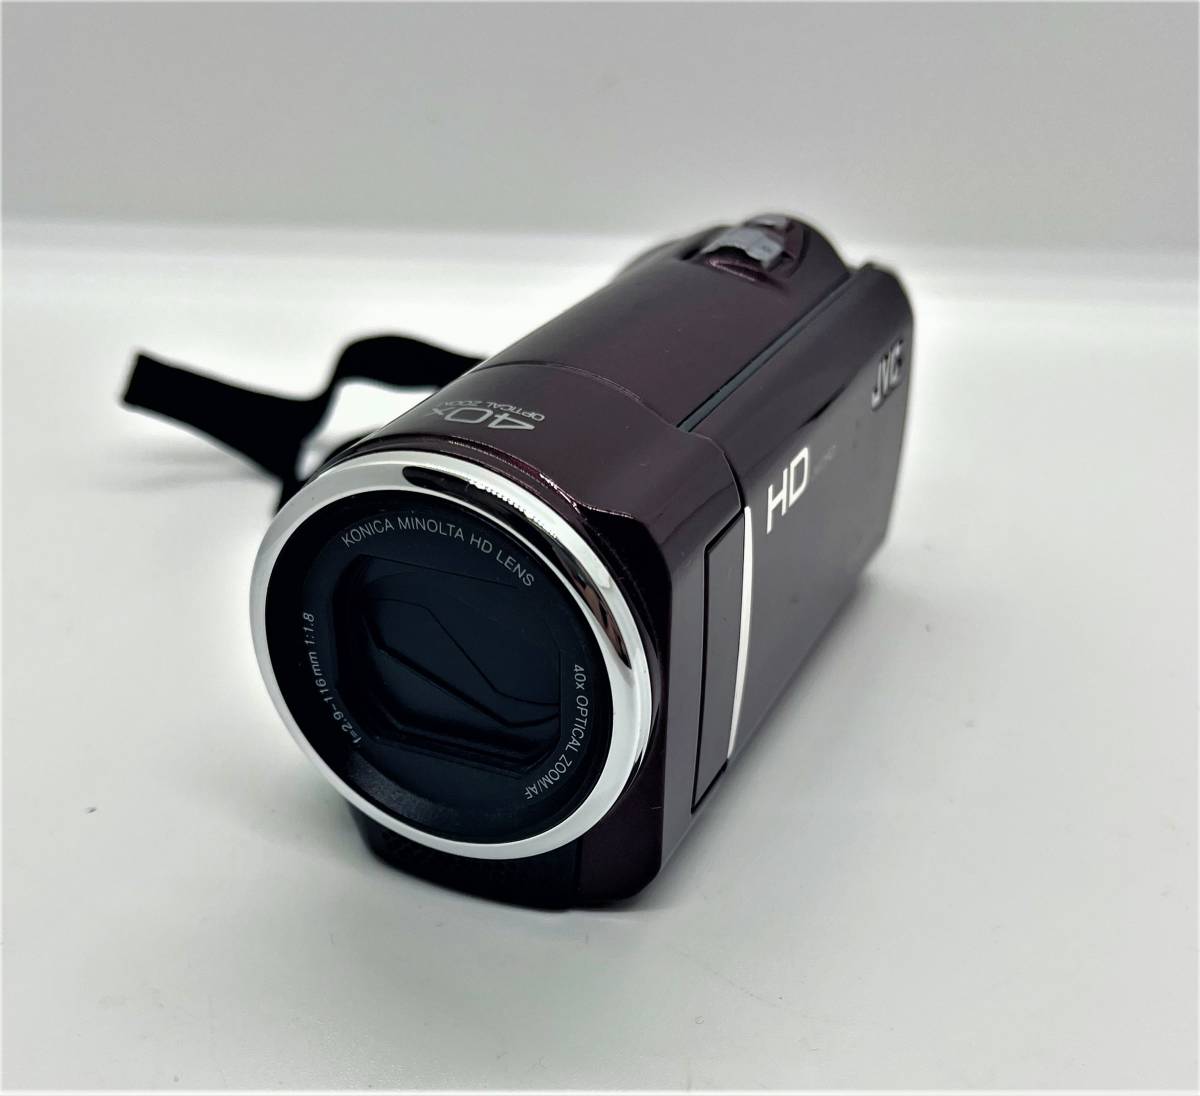  ビデオカメラ JVC GZ-HM460 ハイビジョンメモリー 美品 付属品付 箱付/439 の画像2